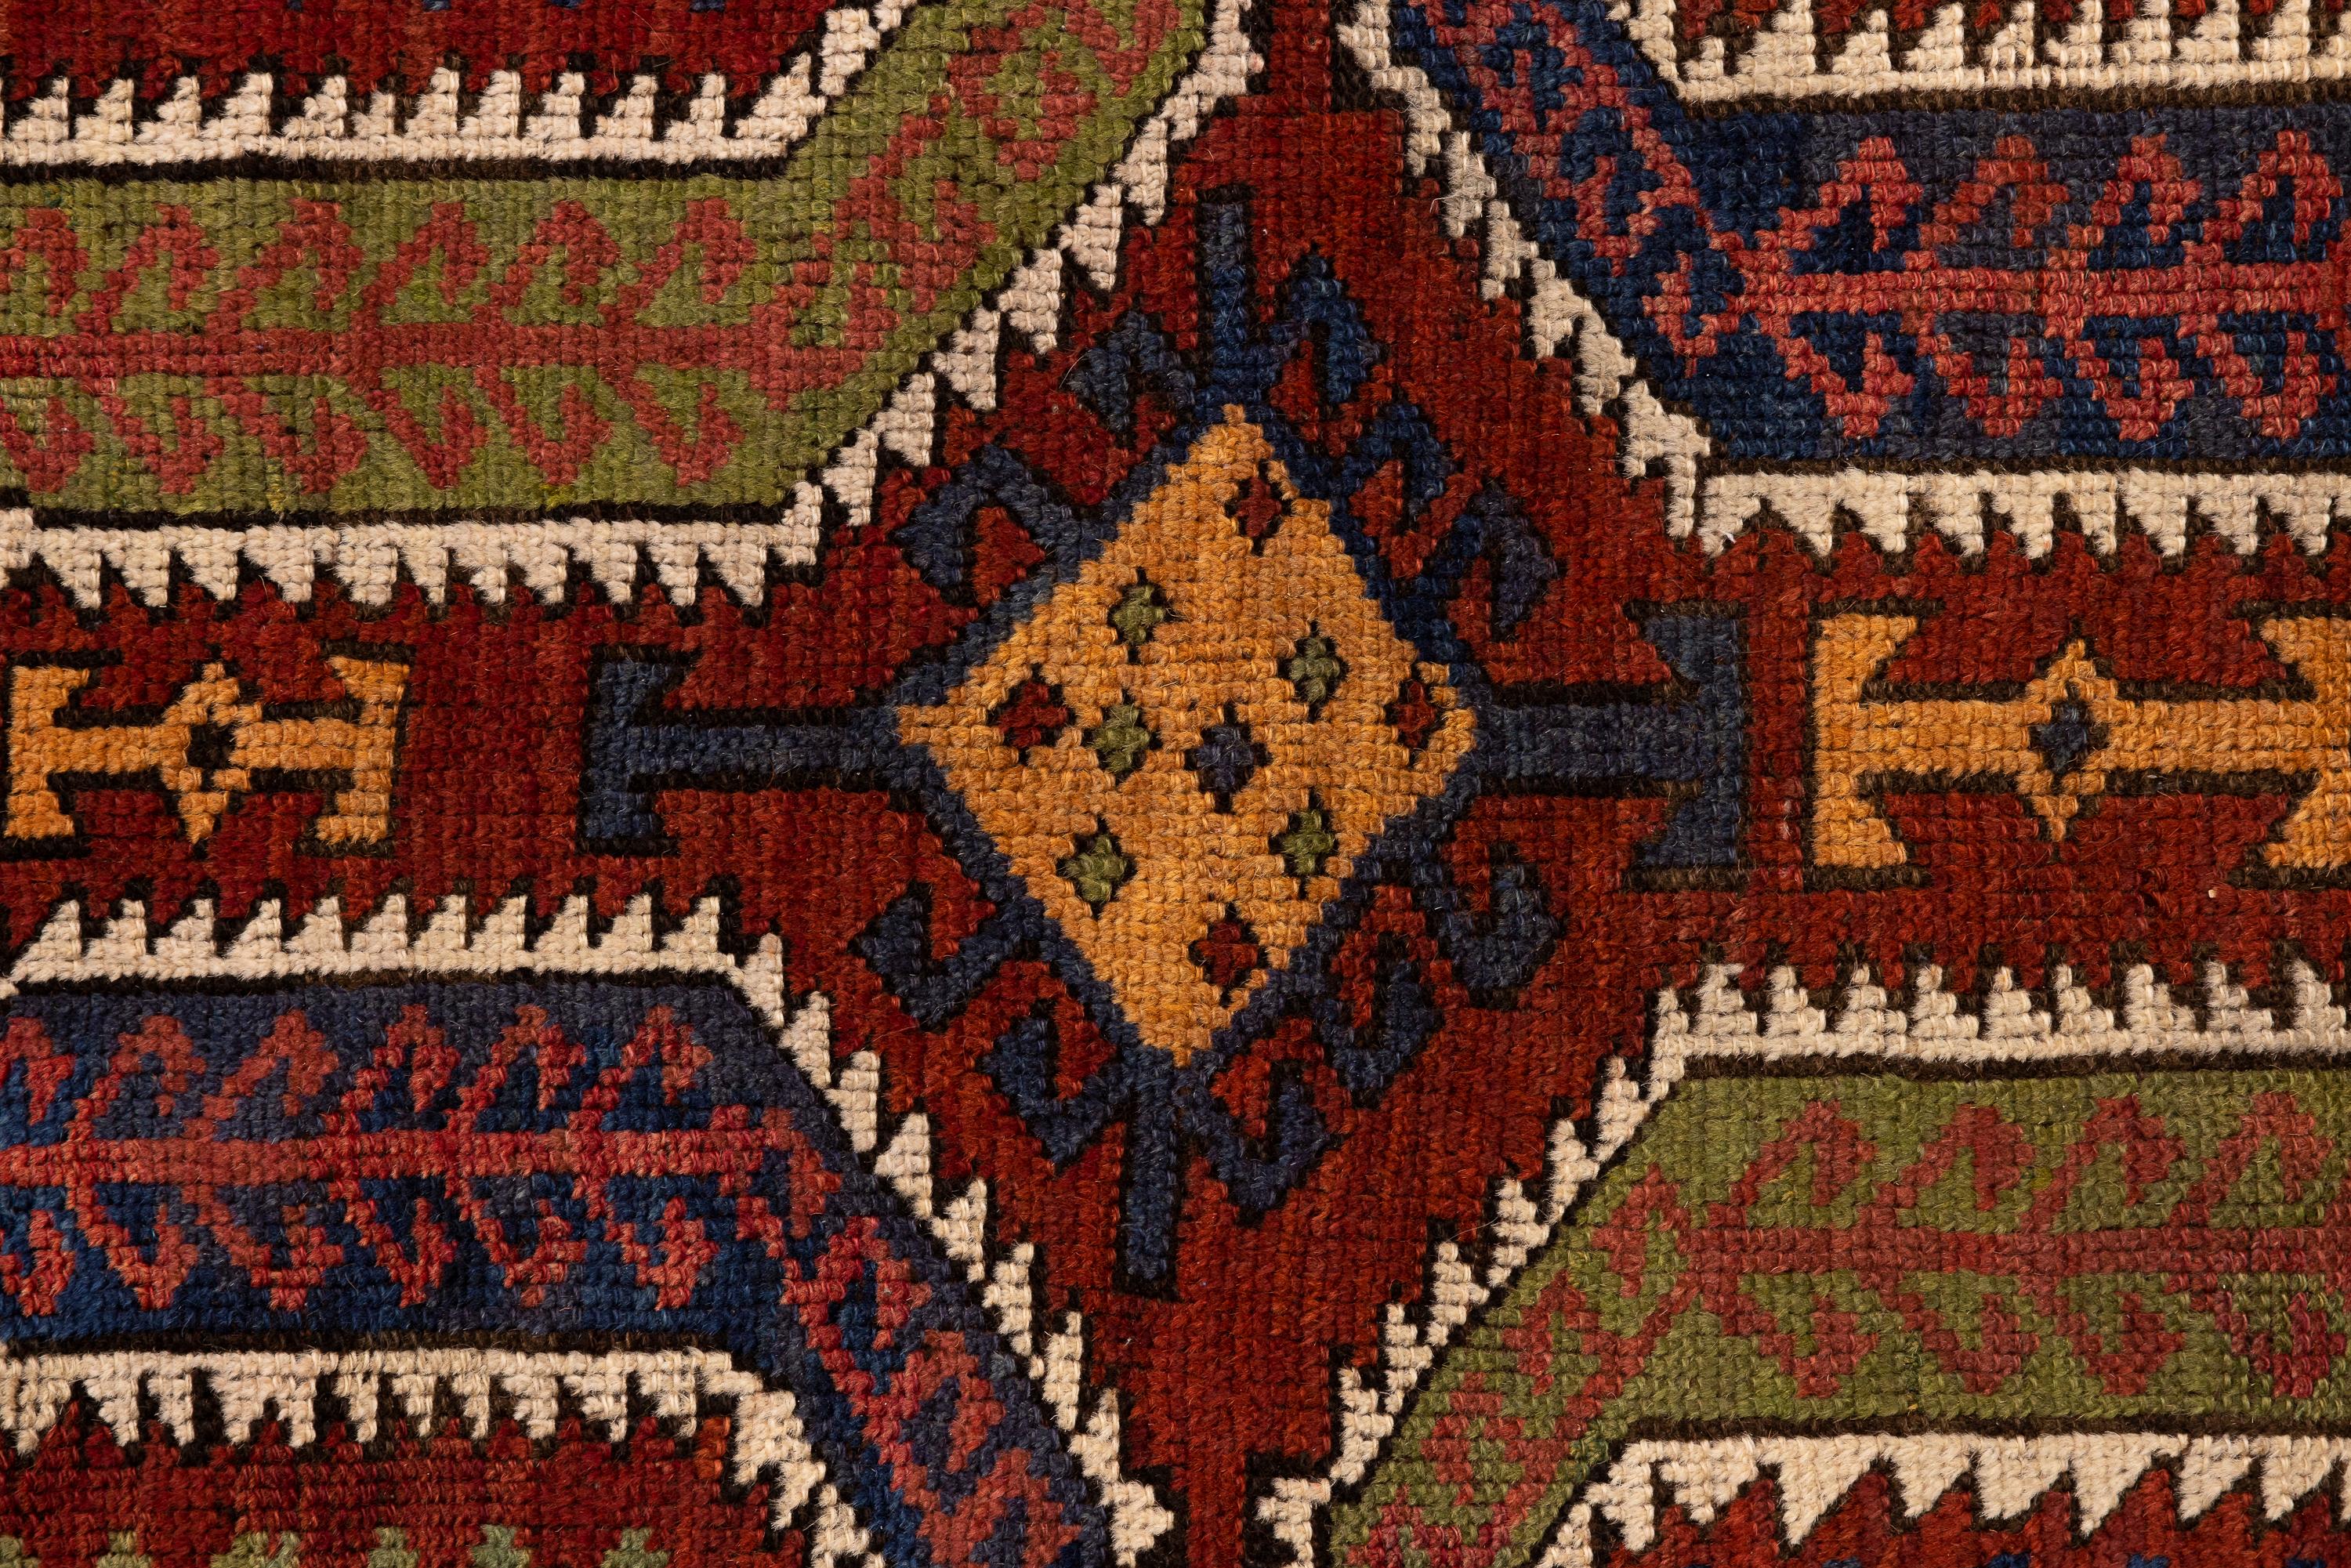 Konya - Zentralanatolien

Antiker Konya Yastik mit kräftigen und lebhaften Farben. Der Teppich weist ein kompliziertes Design mit leicht asymmetrischen geometrischen Mustern auf. Die vorherrschenden Farben sind erdiges Rot, Blau, Gelb und Grün. Zu